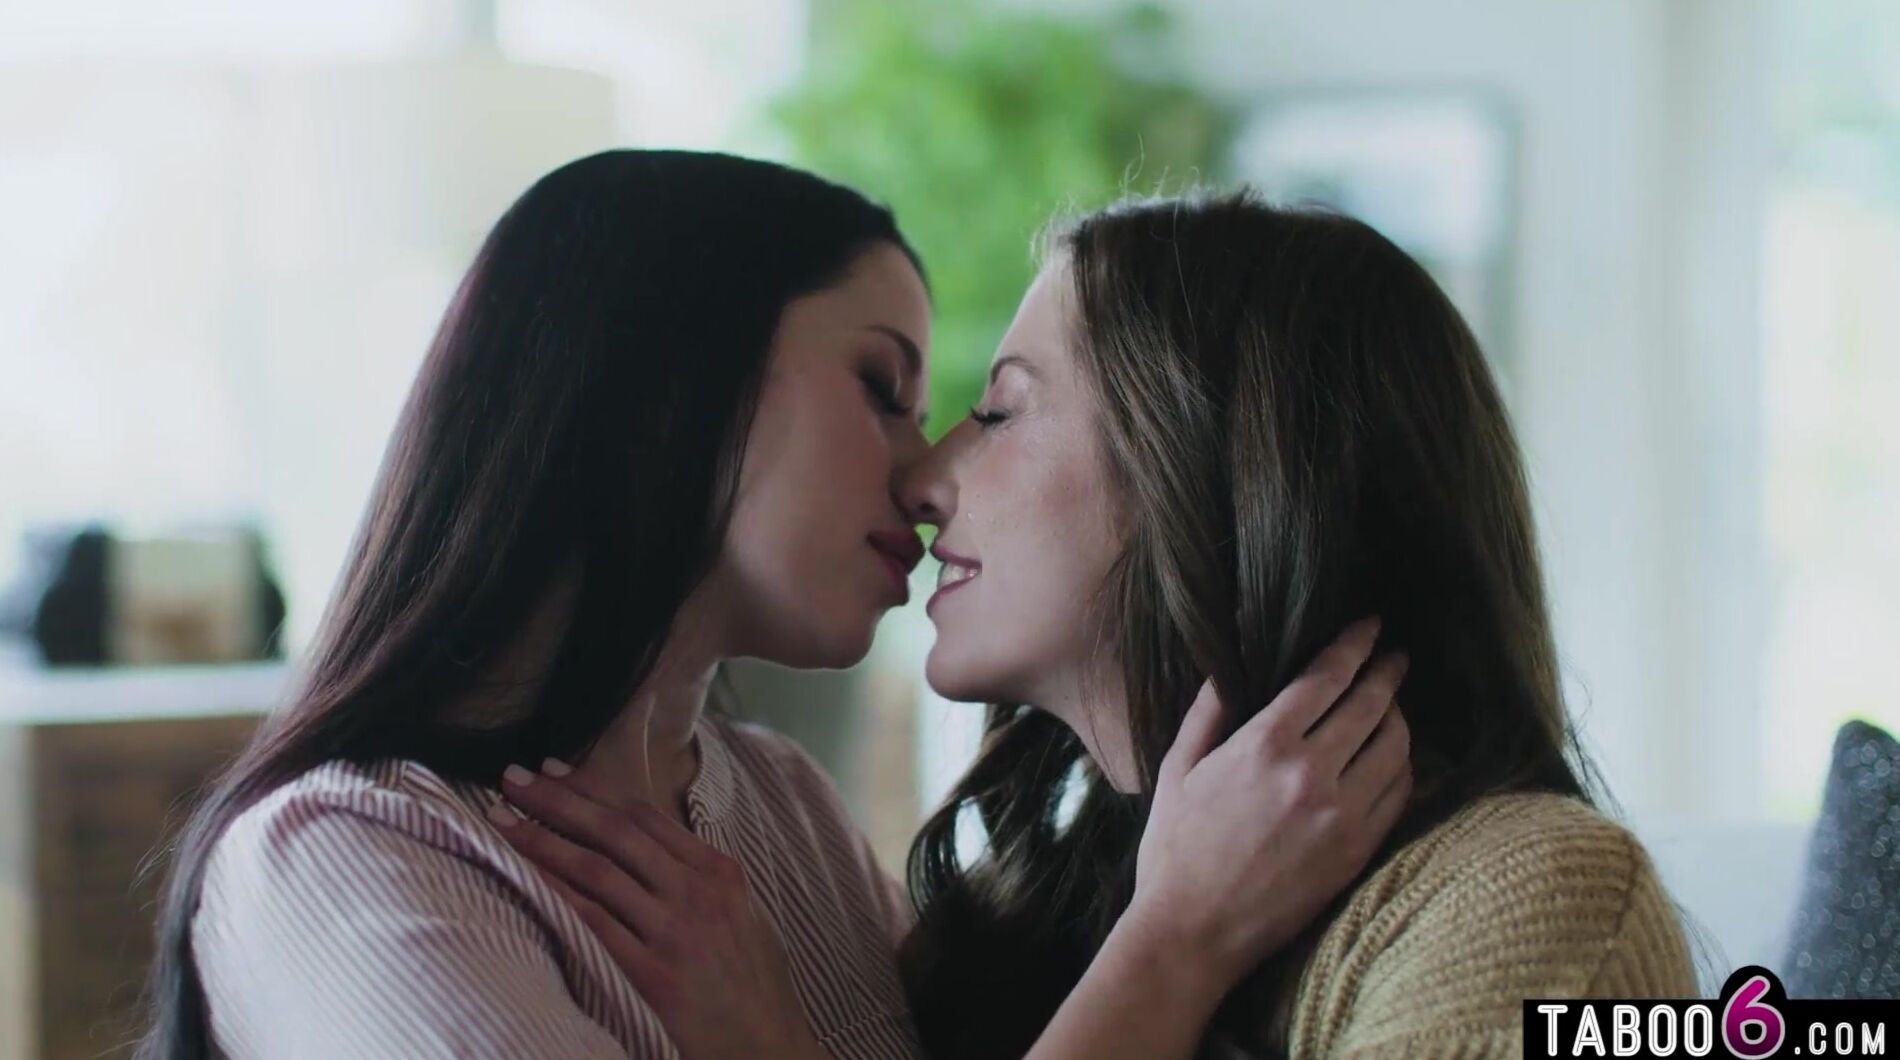 Love triangle licks lesbian